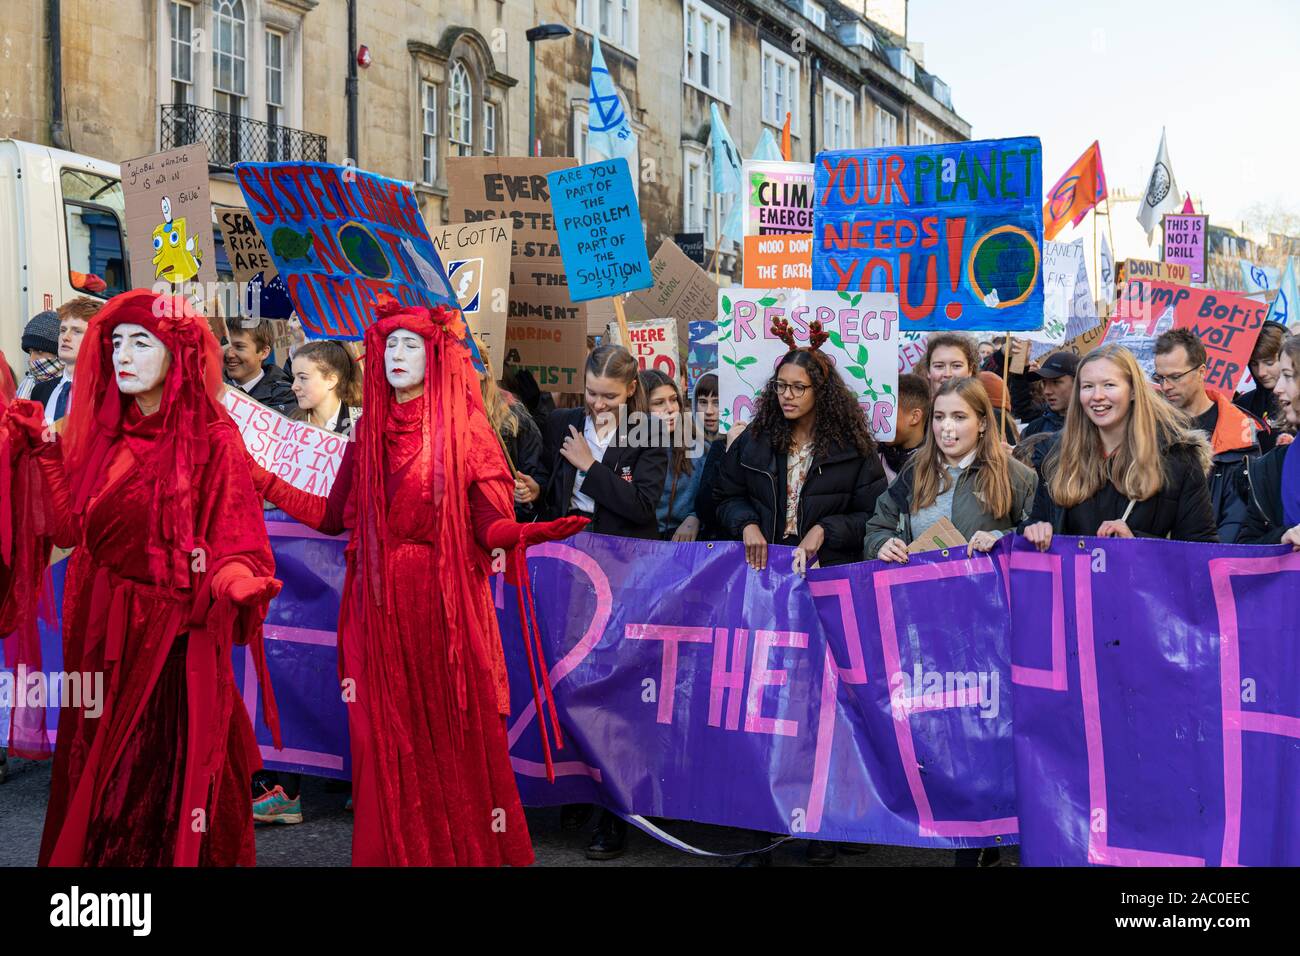 Extinction les manifestants de la Brigade rouge de Rébellion sur le changement climatique se rassemblent dans le centre de Bath avec la Youth Climate Alliance qui milite pour l'action du changement climatique. Bath Royaume-Uni. 29 novembre 2019, Angleterre, Royaume-Uni Banque D'Images